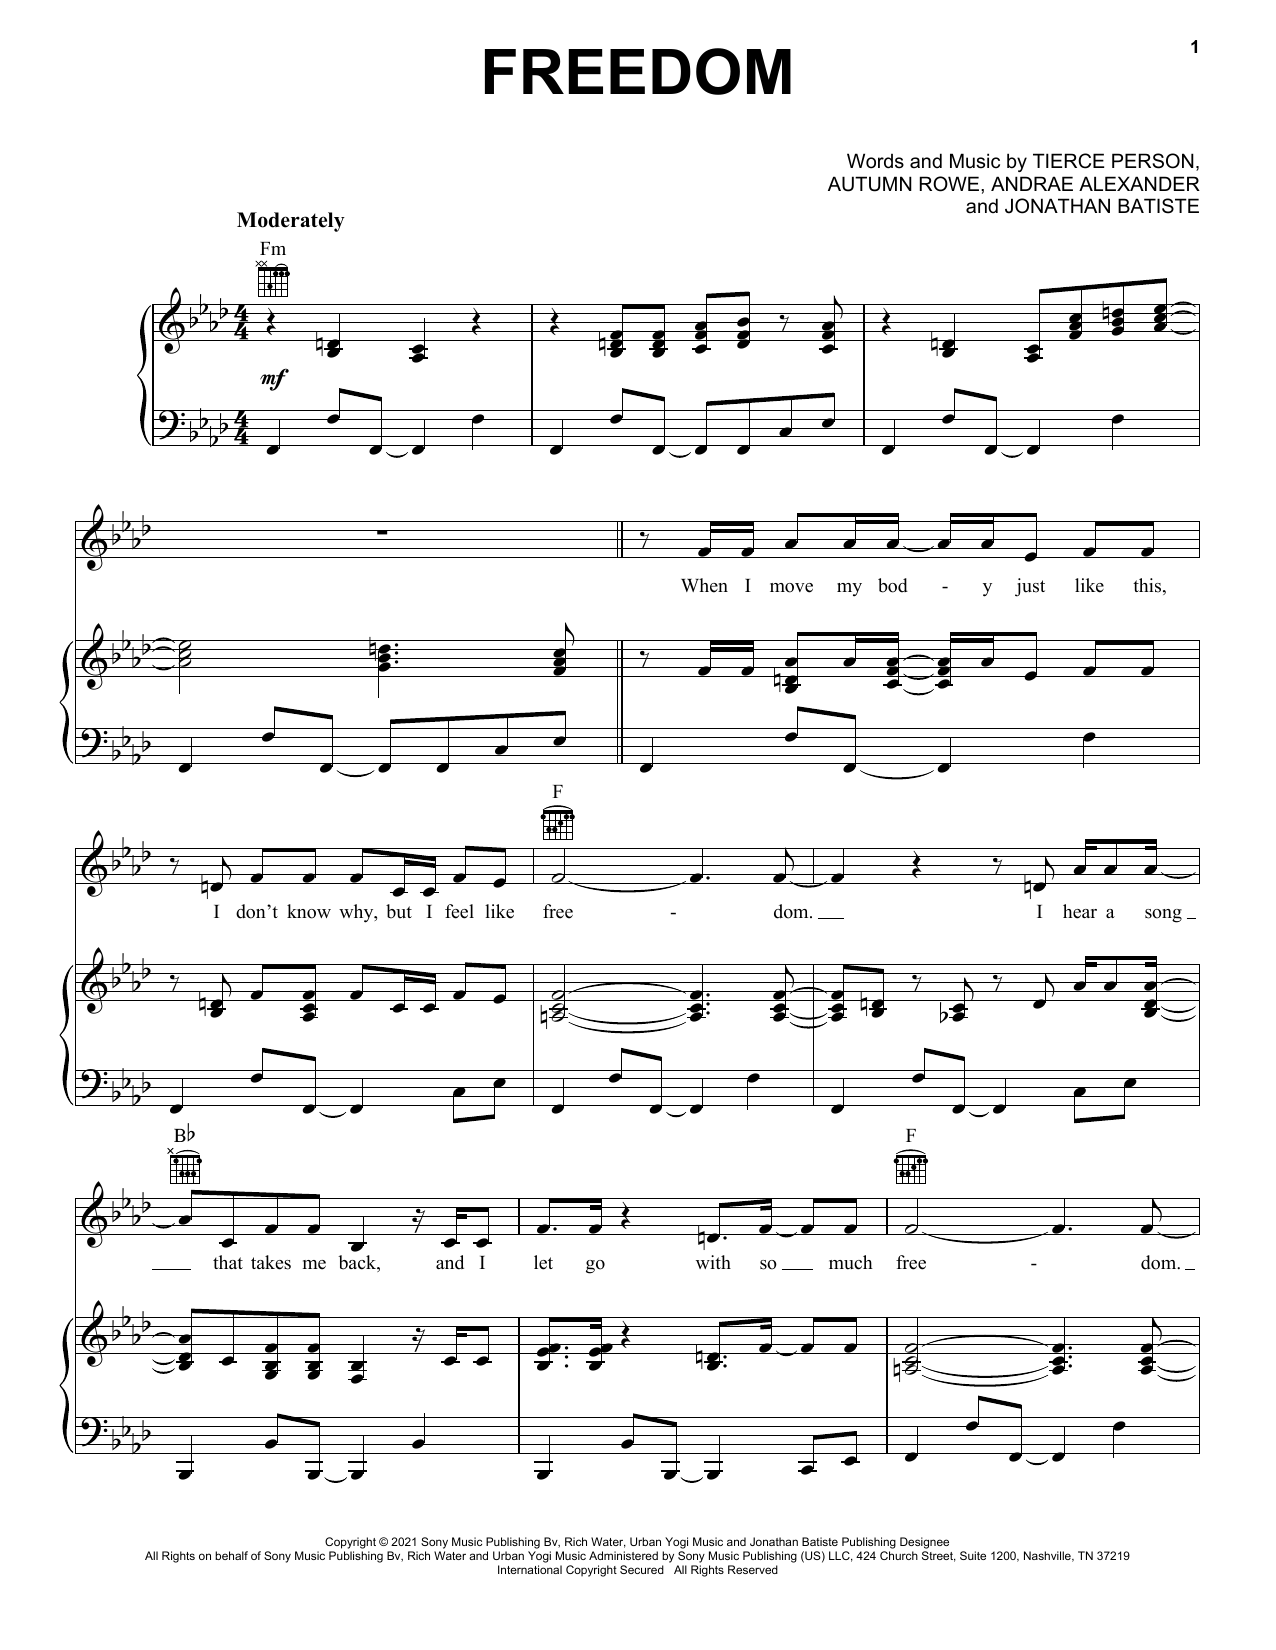 Jon Batiste FREEDOM sheet music notes printable PDF score